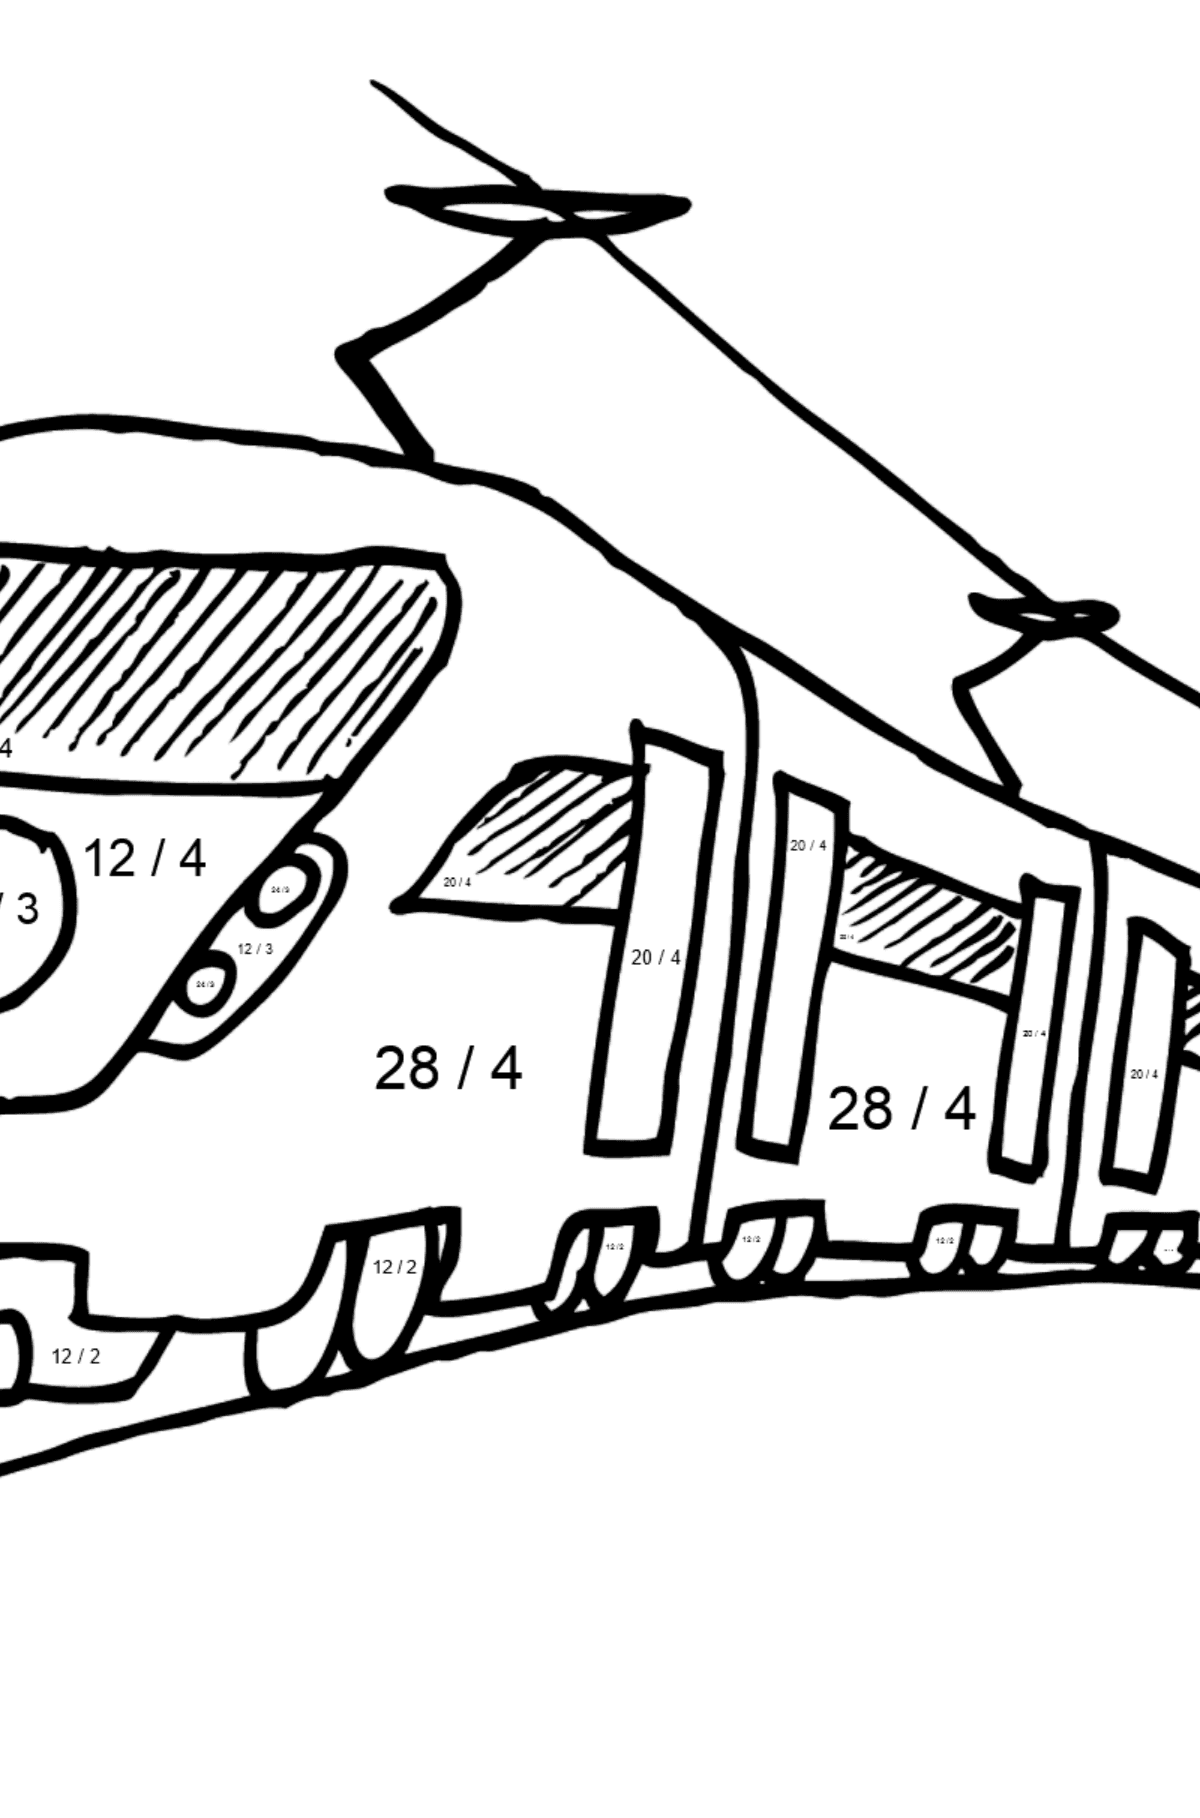 Malvorlage Zug Personenzug - Mathe Ausmalbilder - Division für Kinder